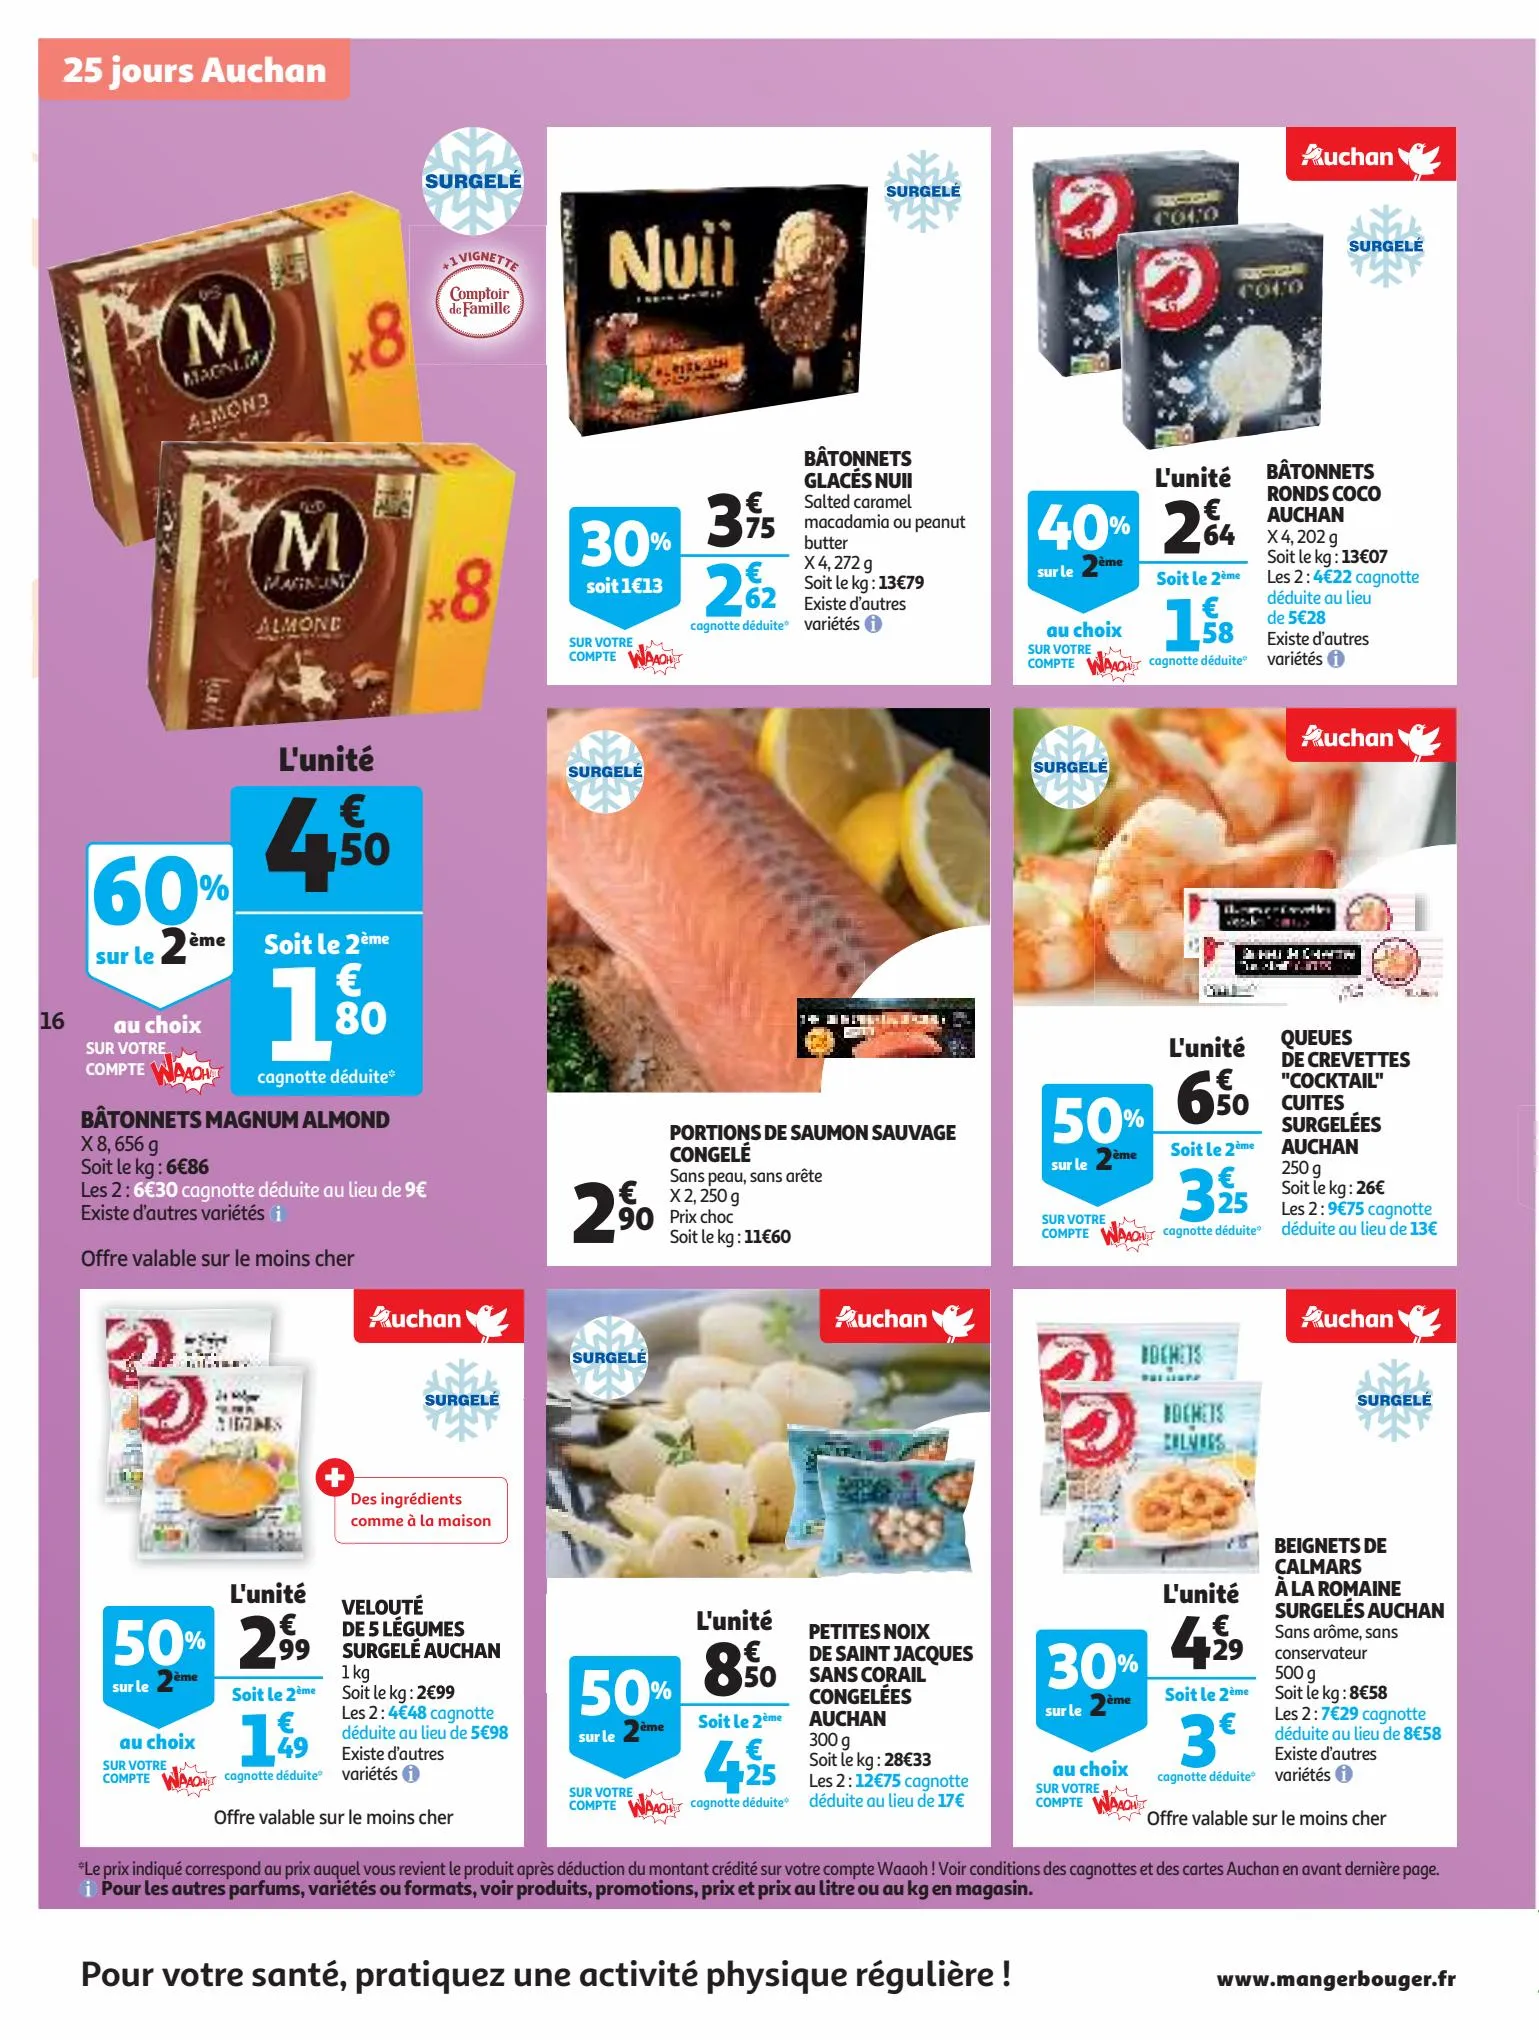 Catalogue 25 Jours Auchan, page 00016